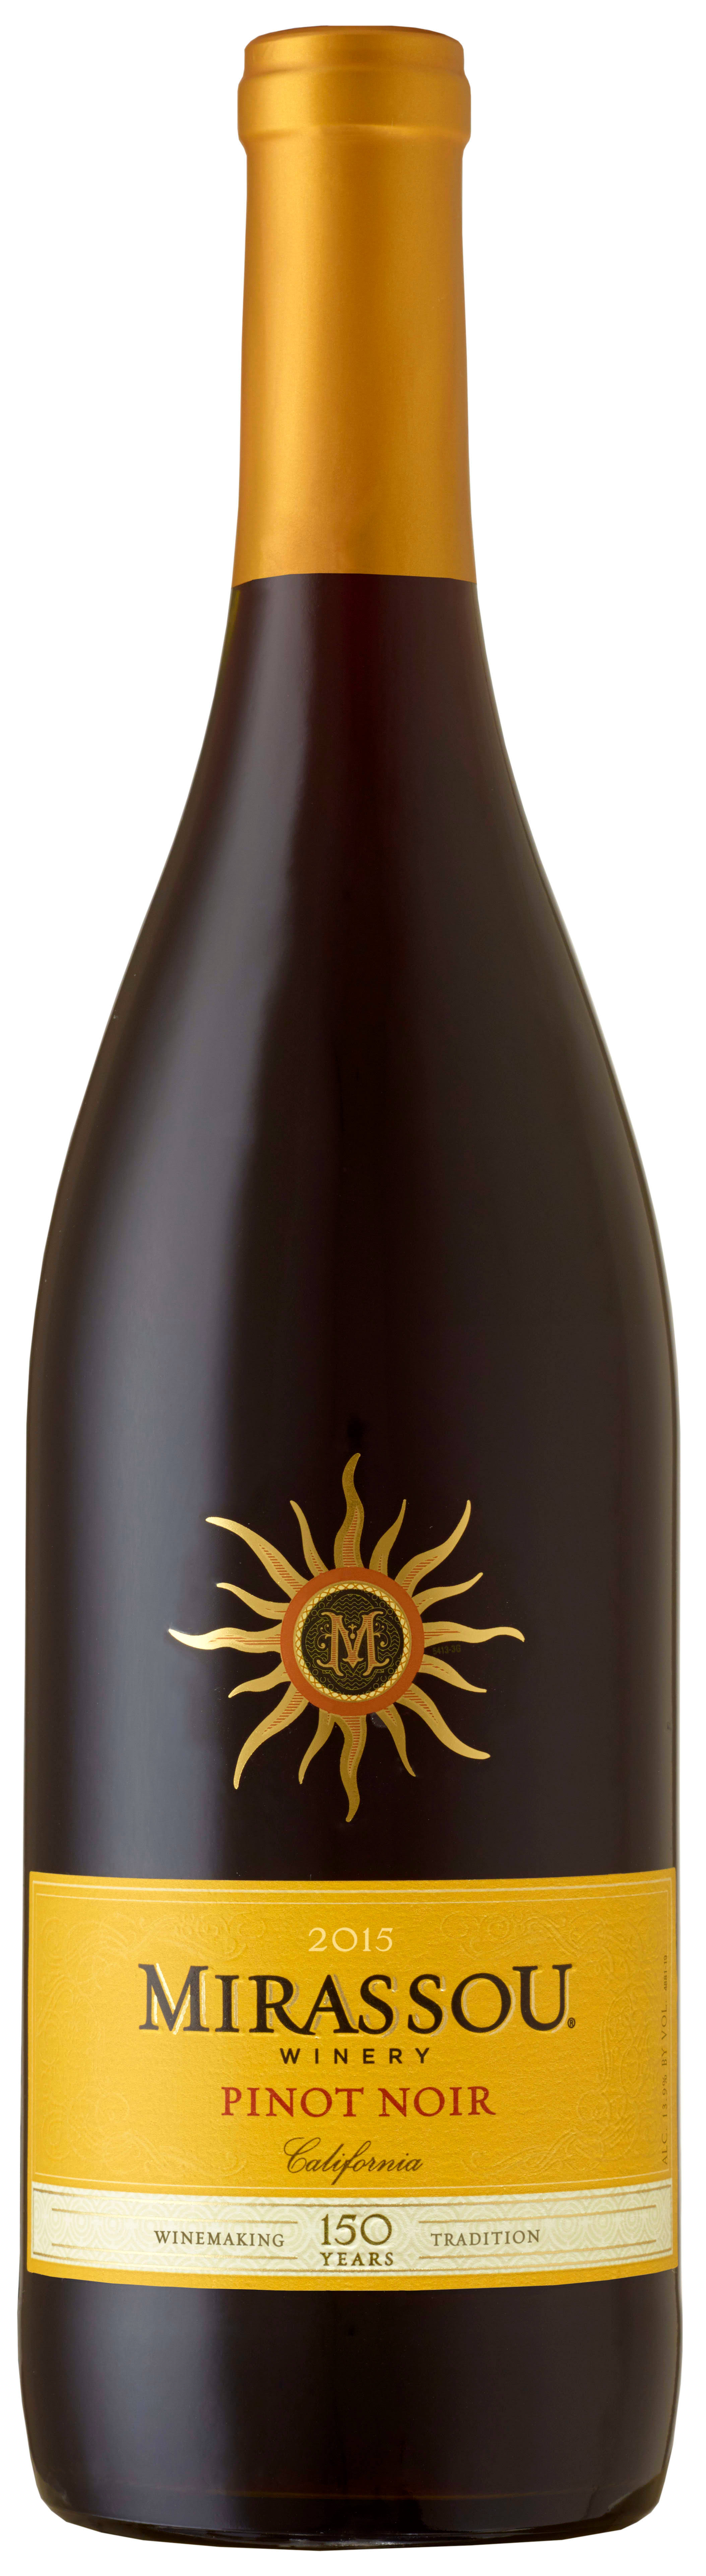 Mirassou Pinot Noir, California, 2016 - 750 ml